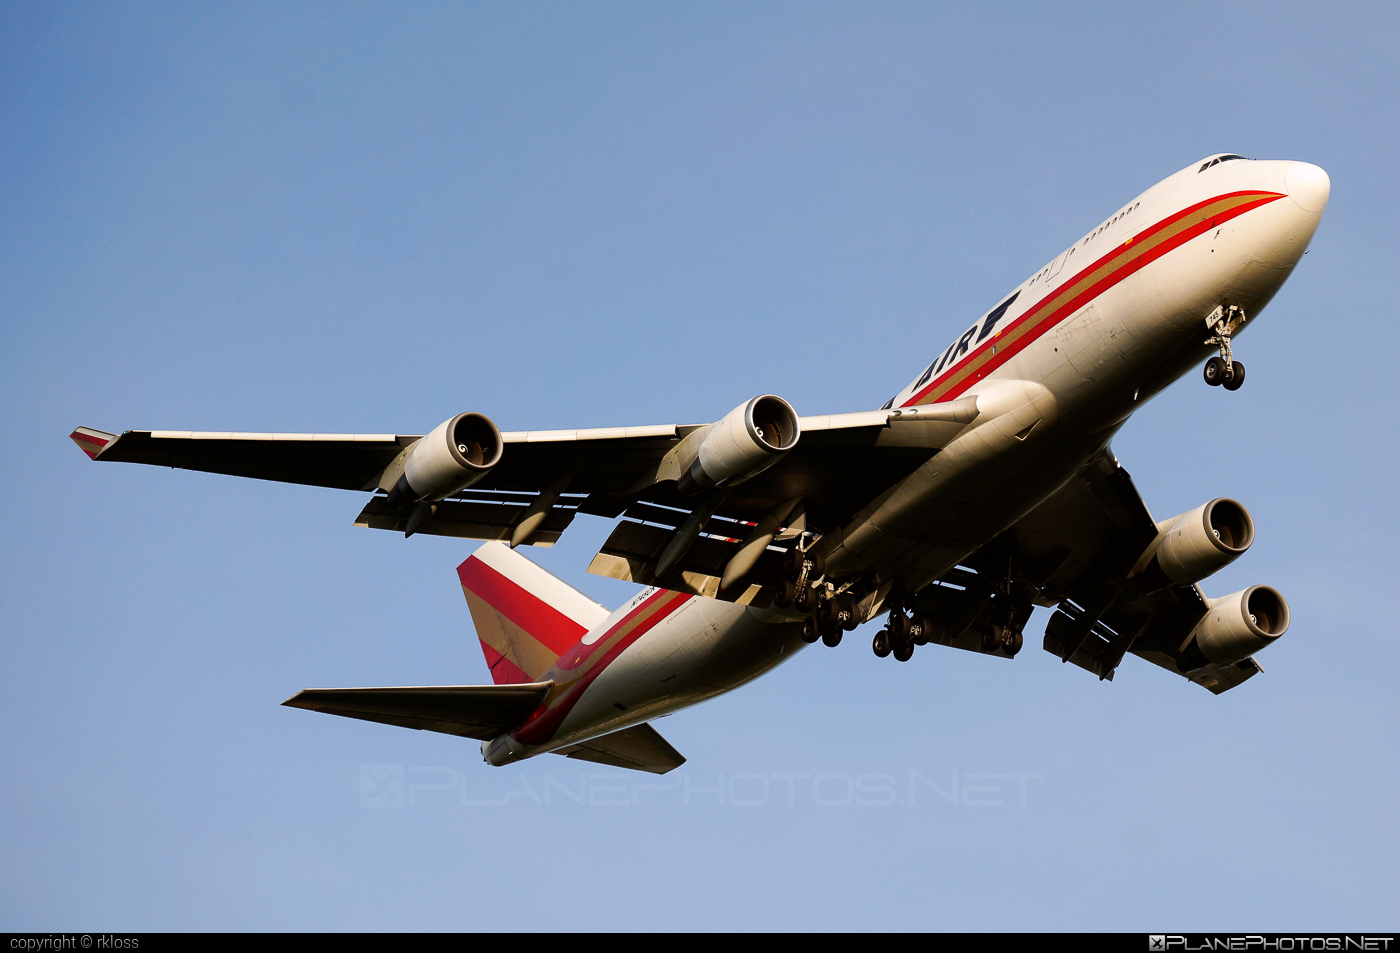 Boeing 747-400BCF - N745CK operated by Kalitta Air #b747 #b747bcf #boeing #boeing747 #boeingconvertedfreighter #jumbo